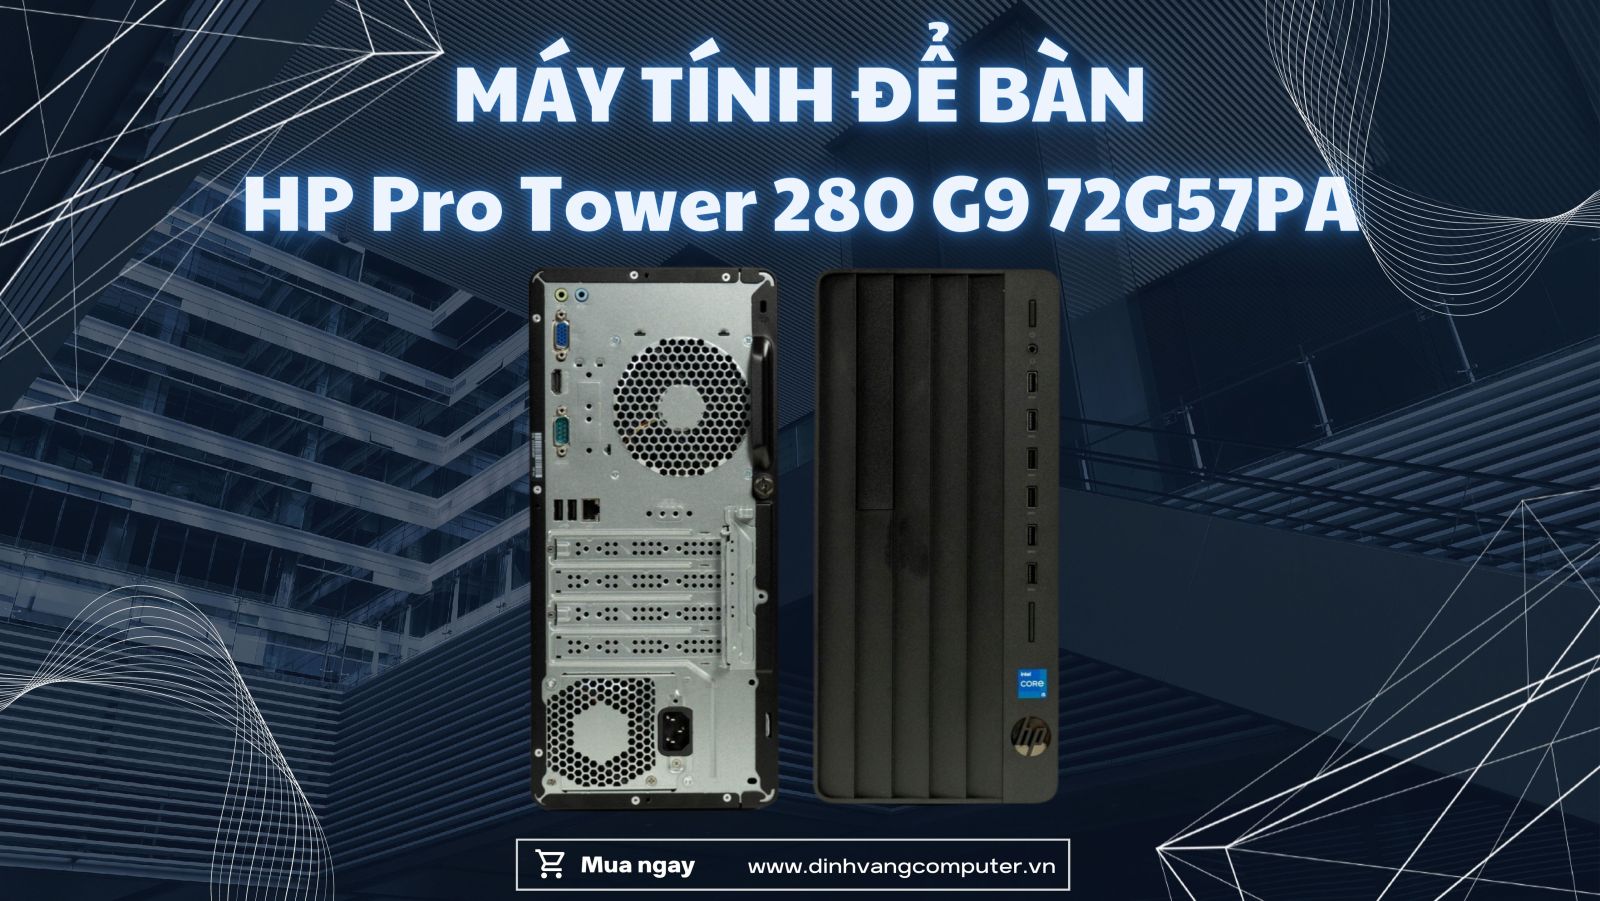 Khả năng kết nối dây và không dây đa dạng của máy tính để bàn HP Pro Tower 280 G9 72G57PA.